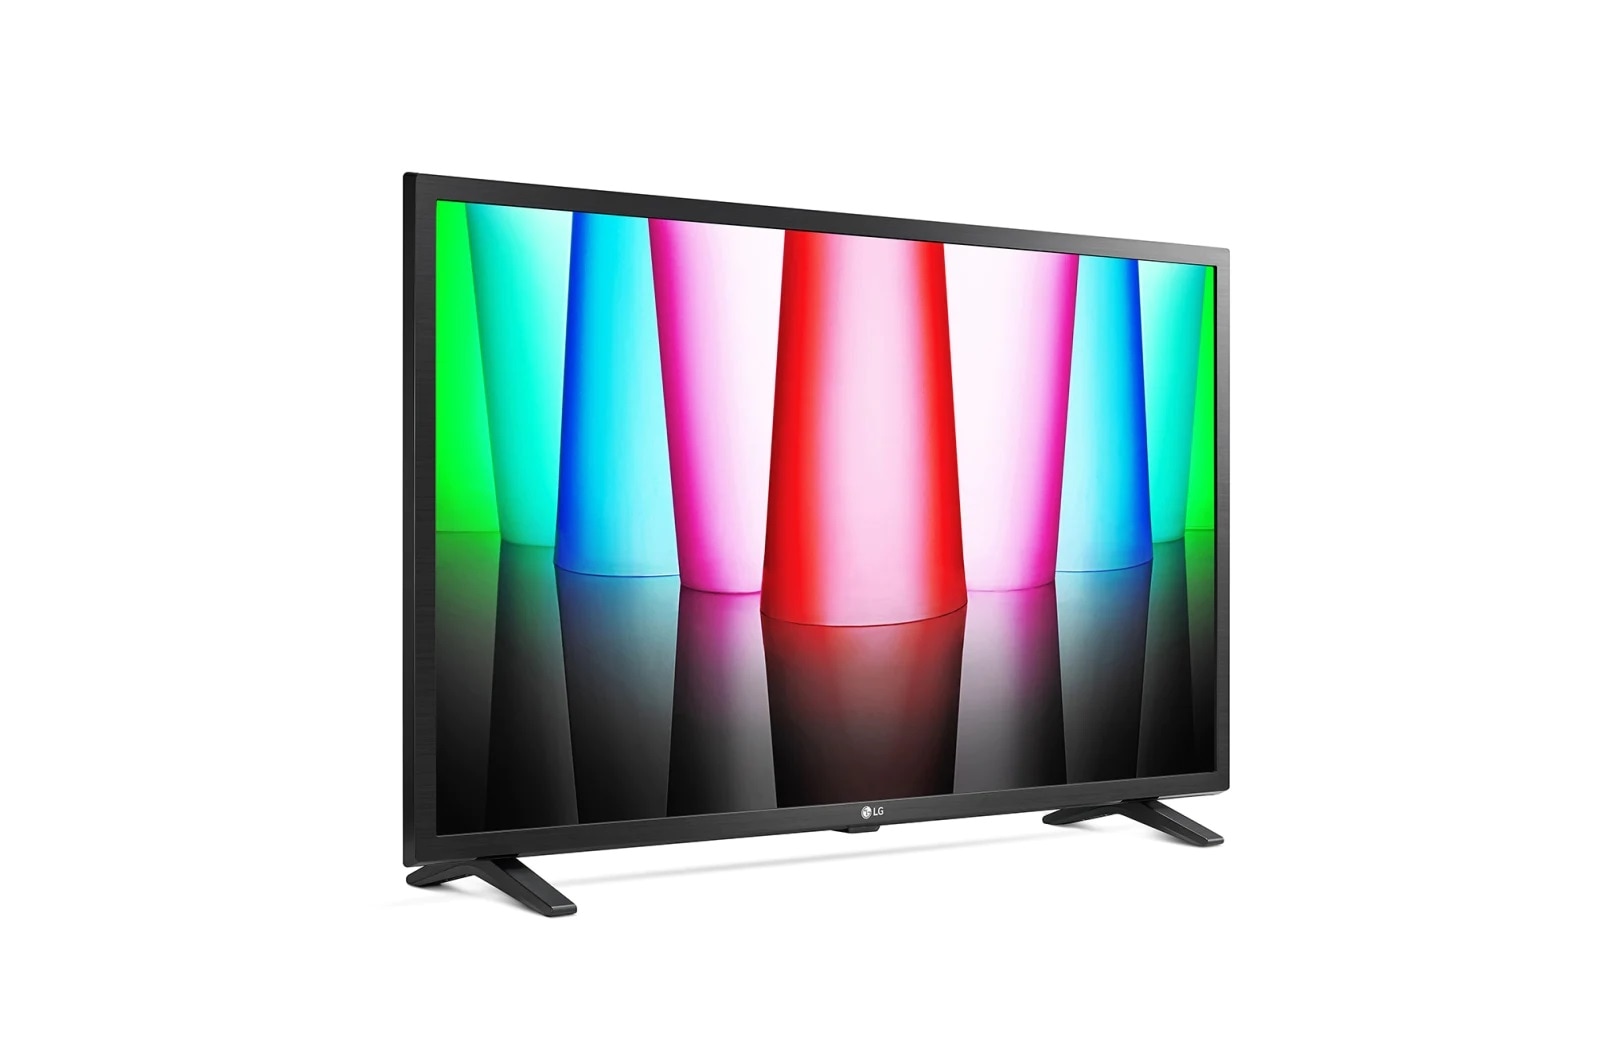 32 Zoll Fernseher kaufen: handliche TVs für jedes Zimmer | Cyberport